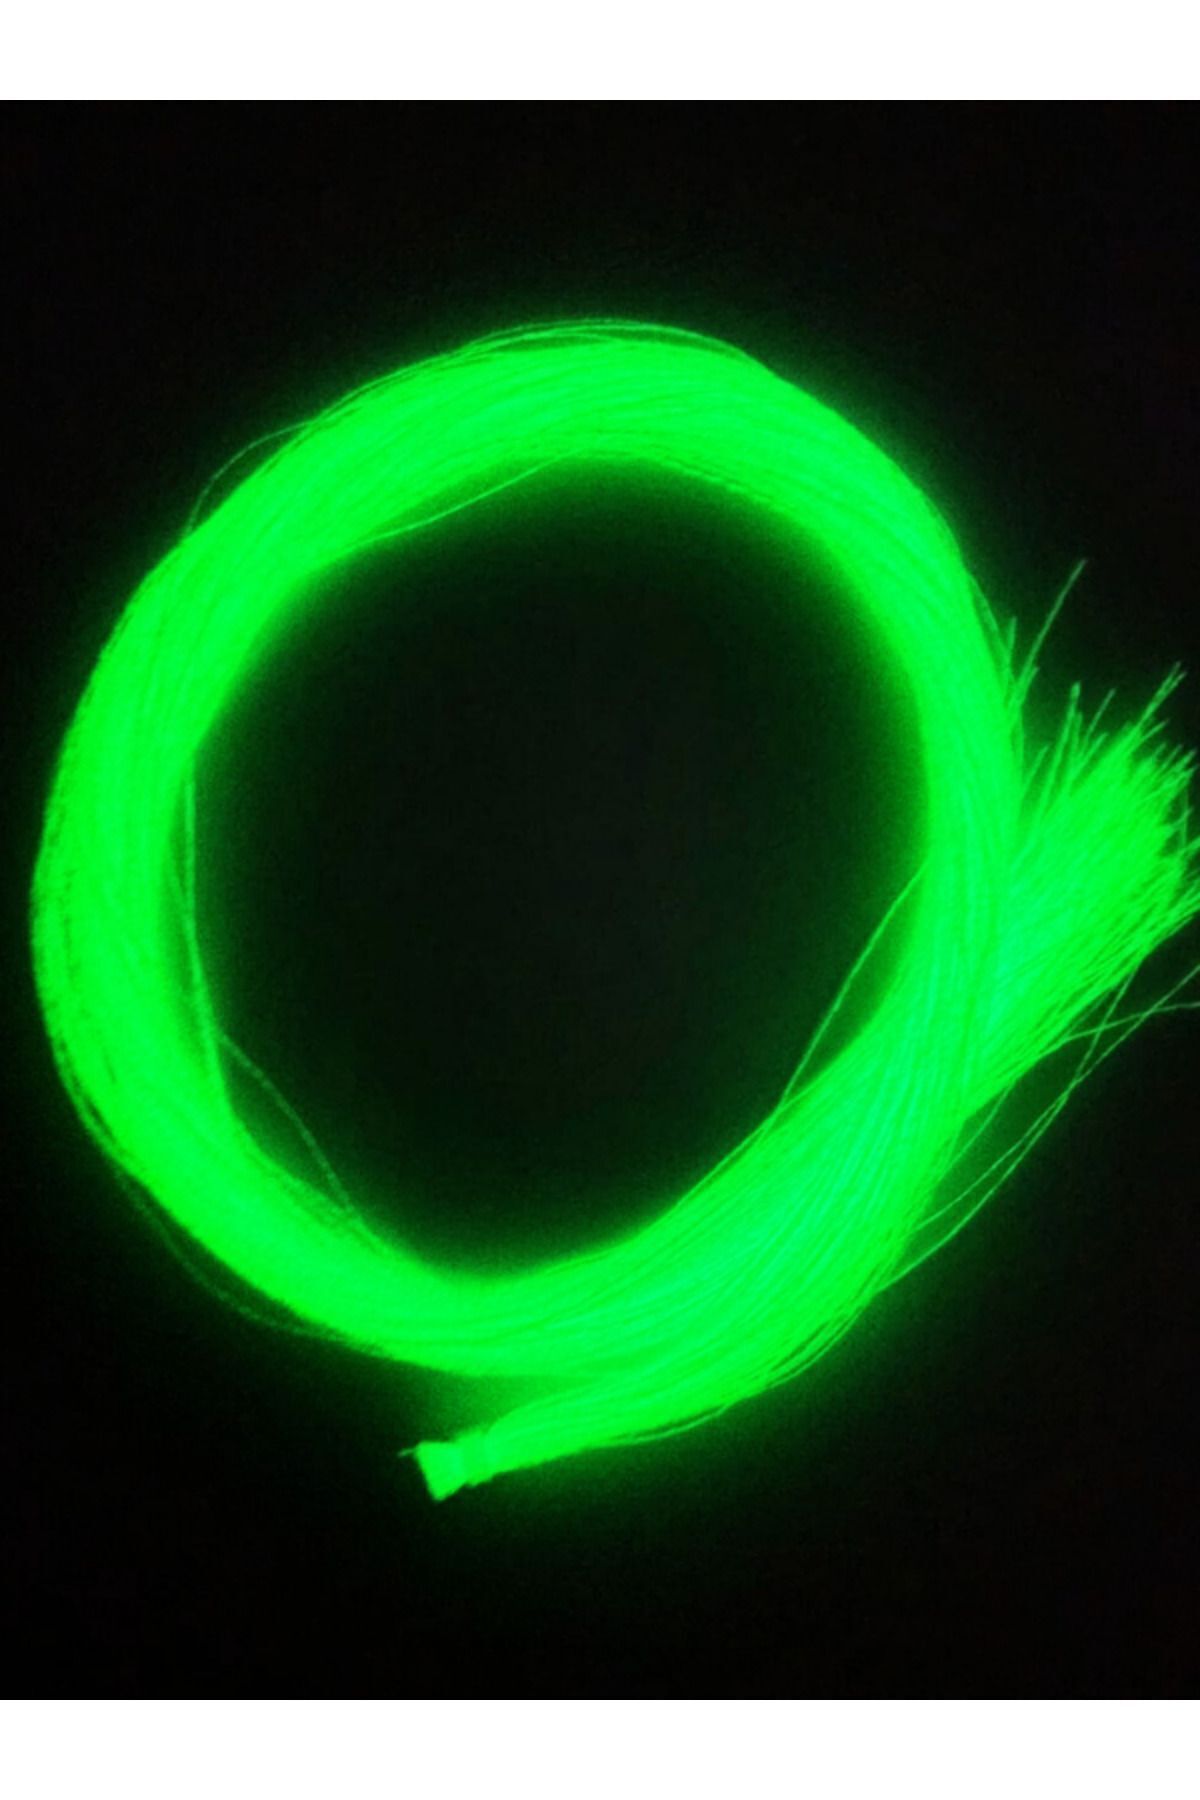 eagenset Su Yeşili Fosforlu Karanlıkta Parlayan Glow / Luminous Ultraviyole (UV) Neon Poşet Çapari Simi